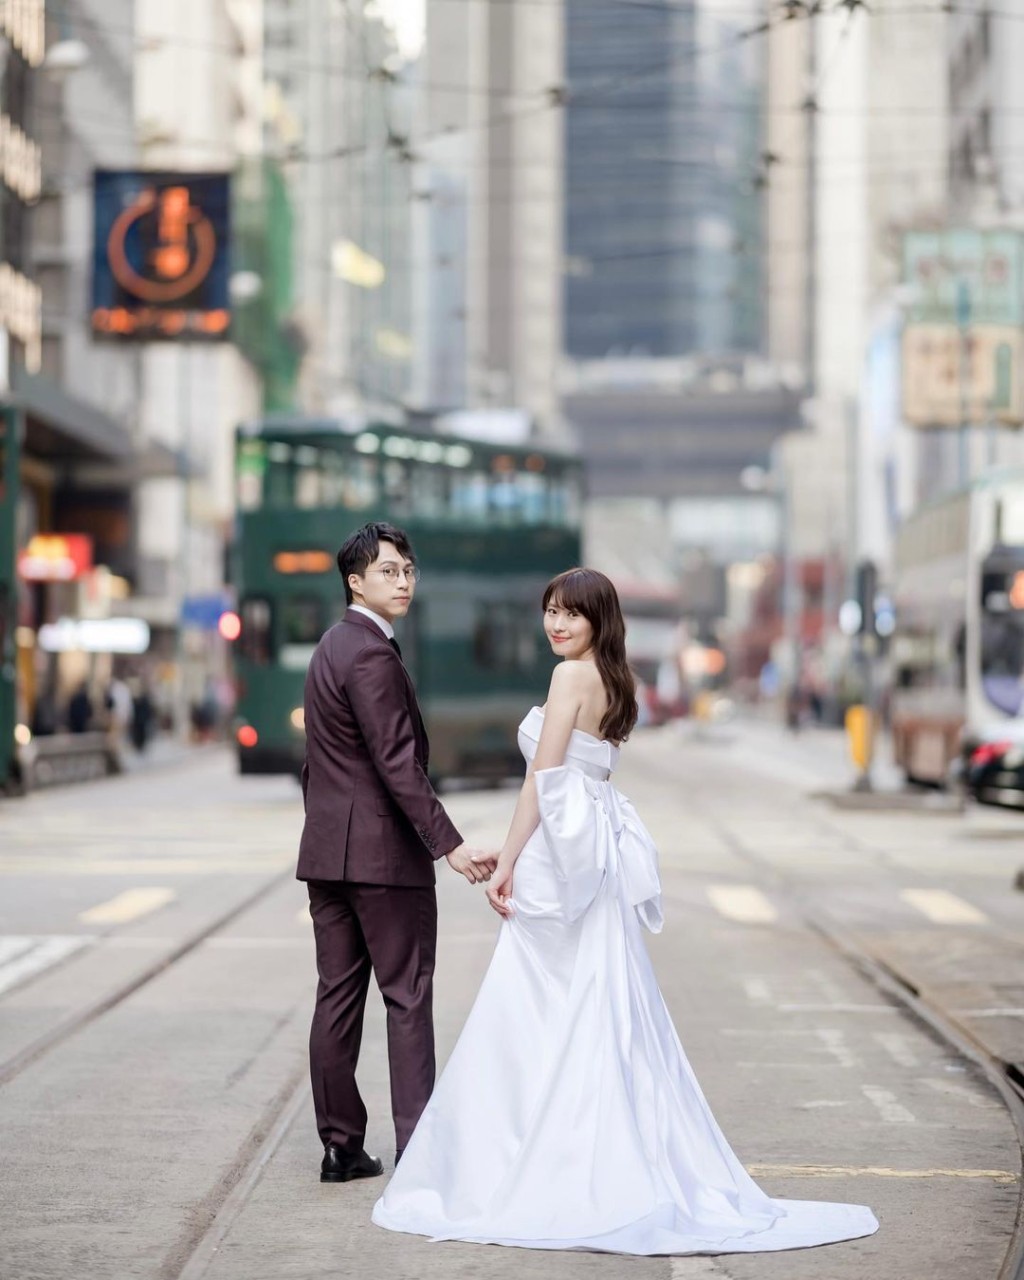 婚紗相好有香港特色。